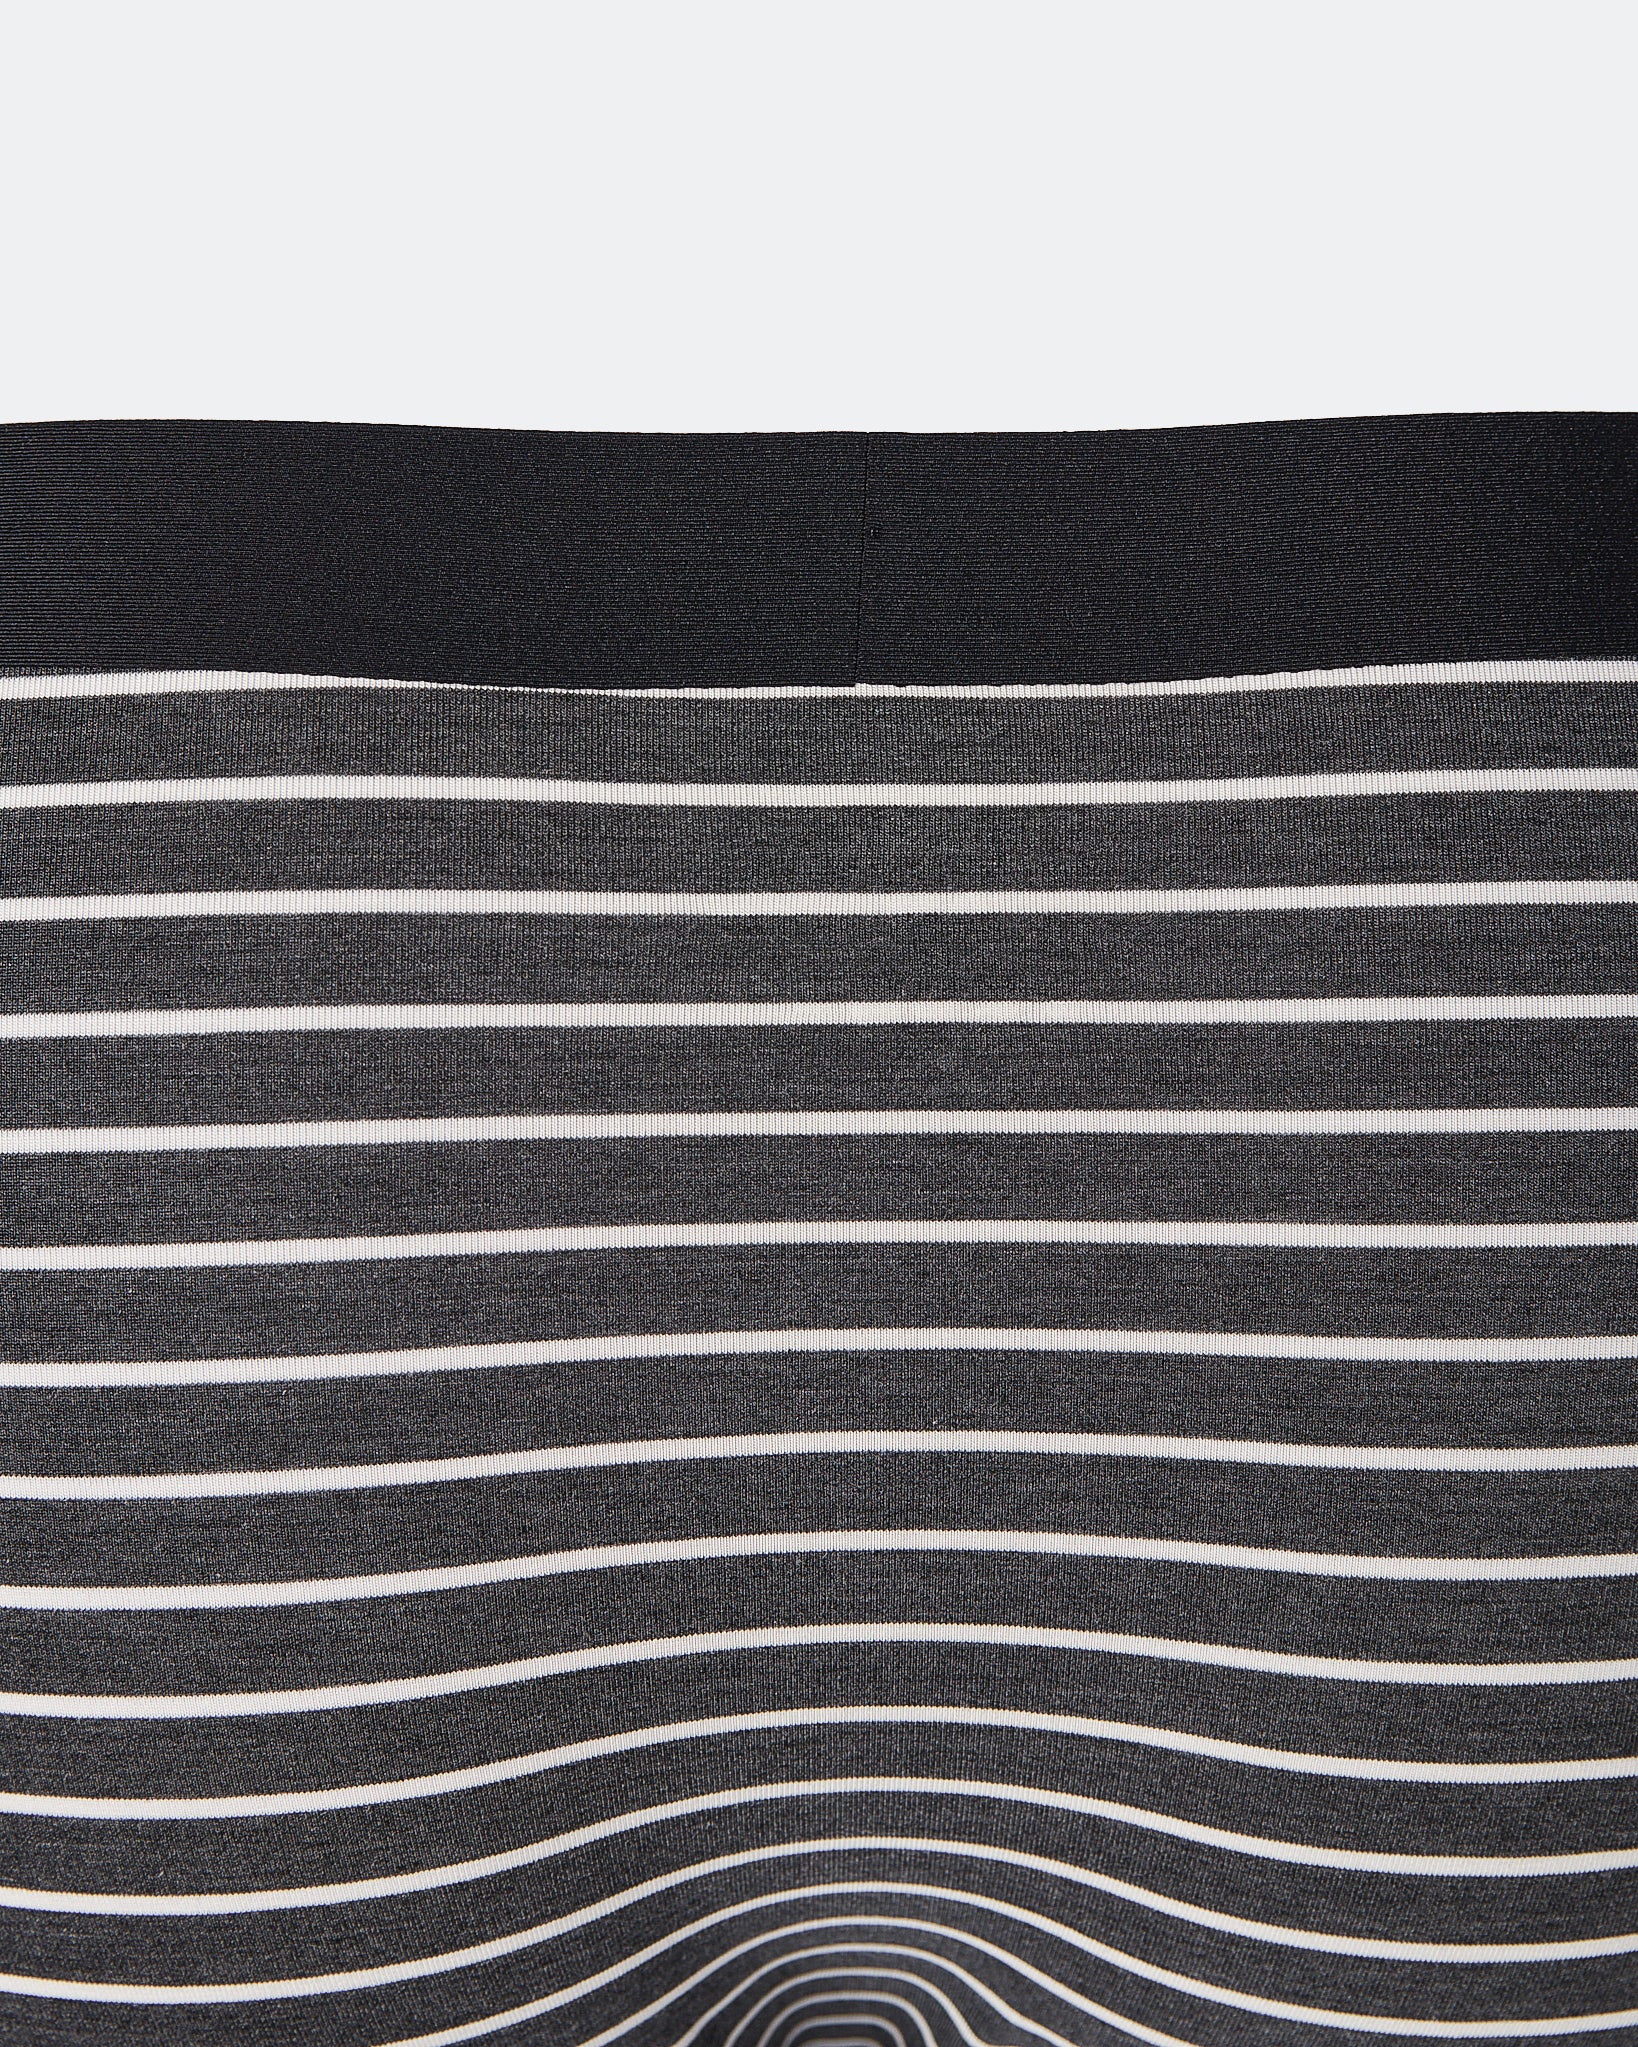 CK Striped Over Printed Men Black  Underwear 6.90